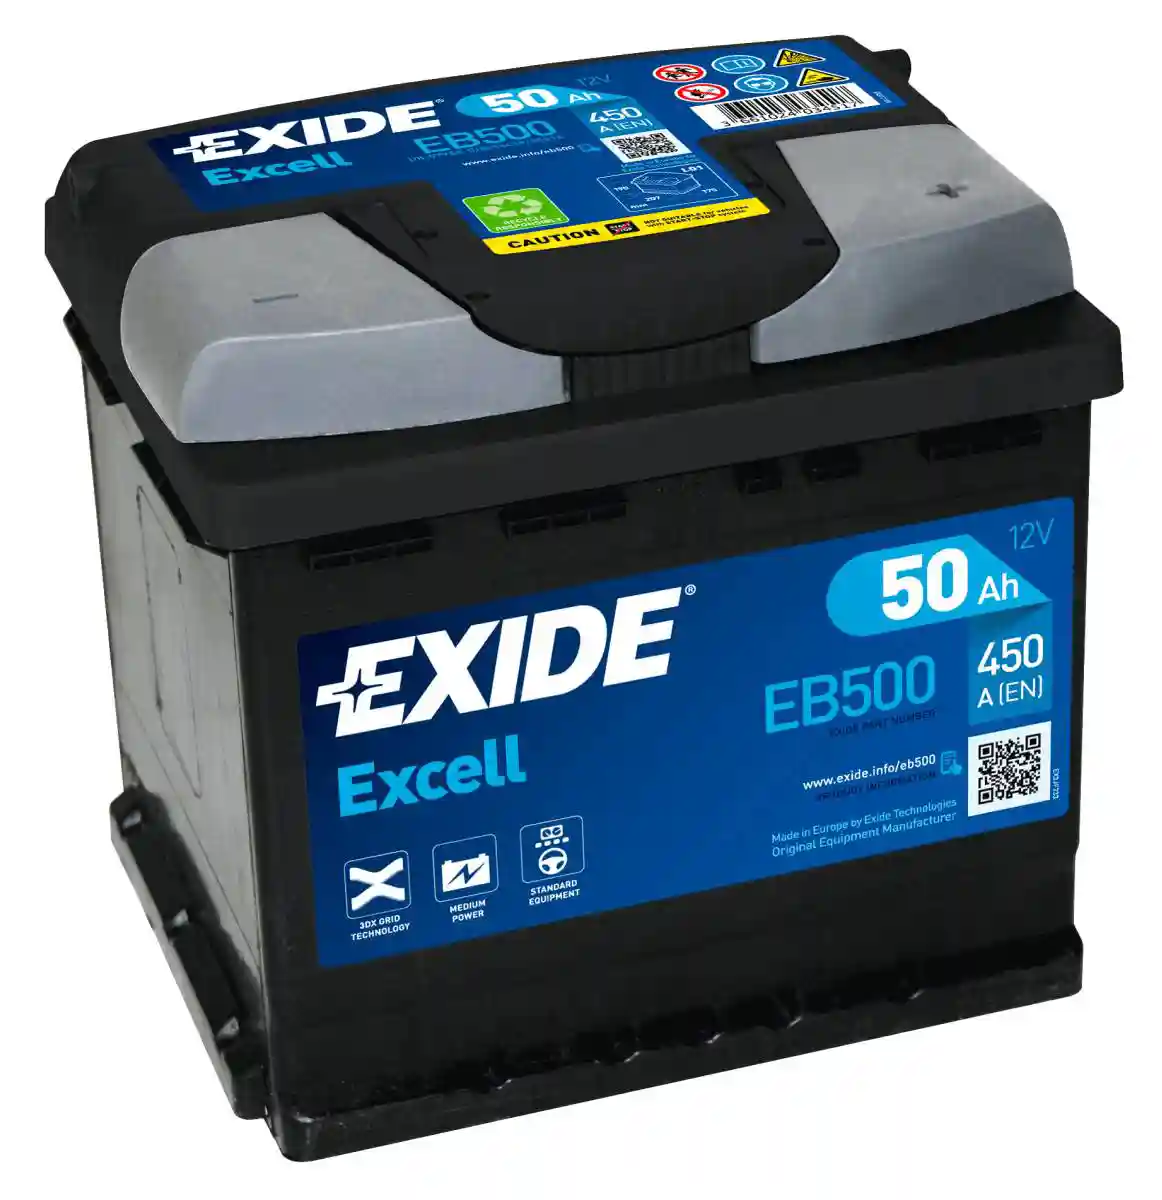 Batteria per auto Exide EB500 Excell 12V 50Ah 450A ordina su Batterie -Online.it